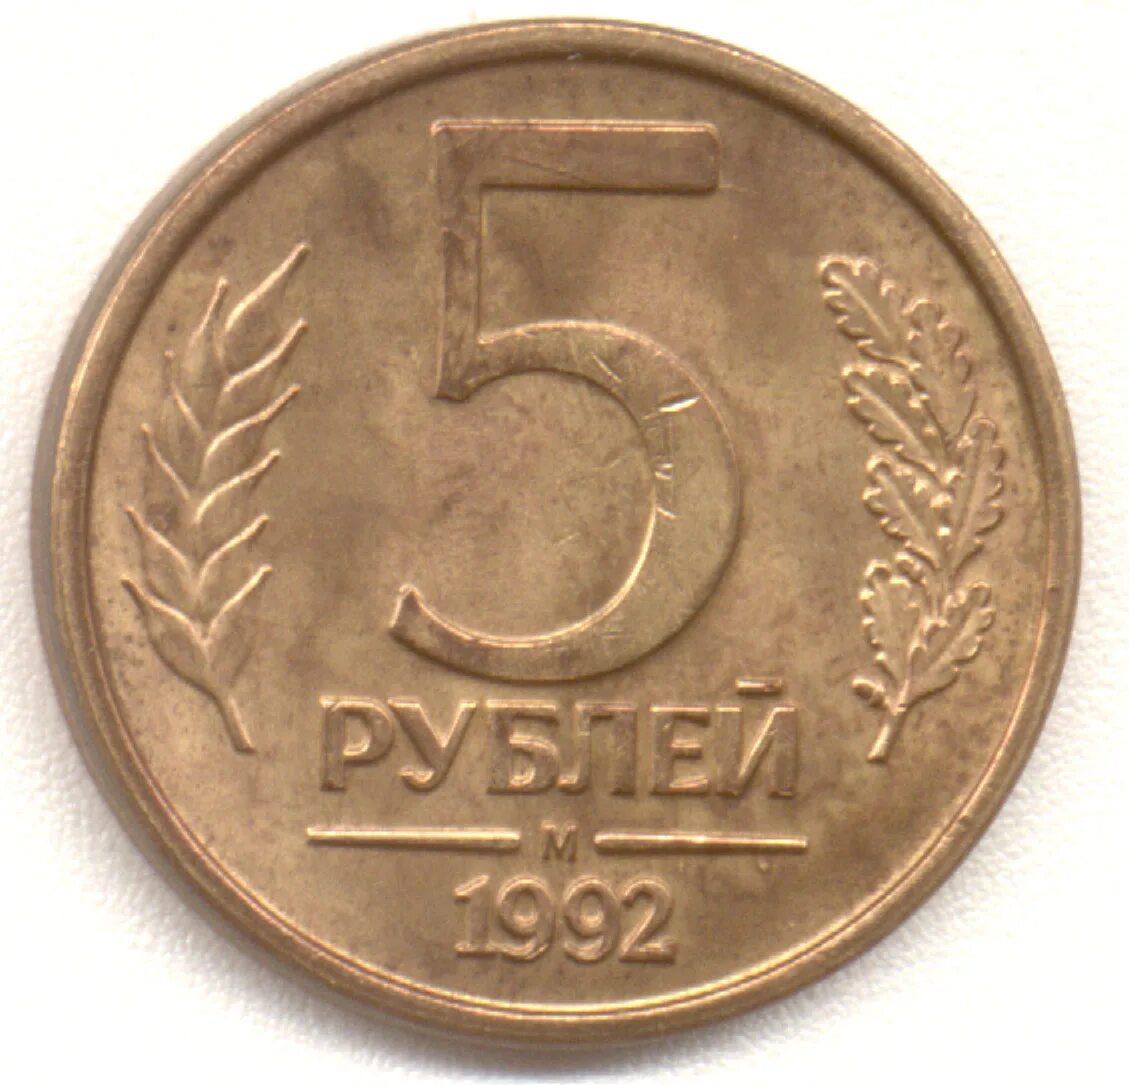 45 5 в рублях. 5 Рублей 1992 года м. Монета 1043 года.